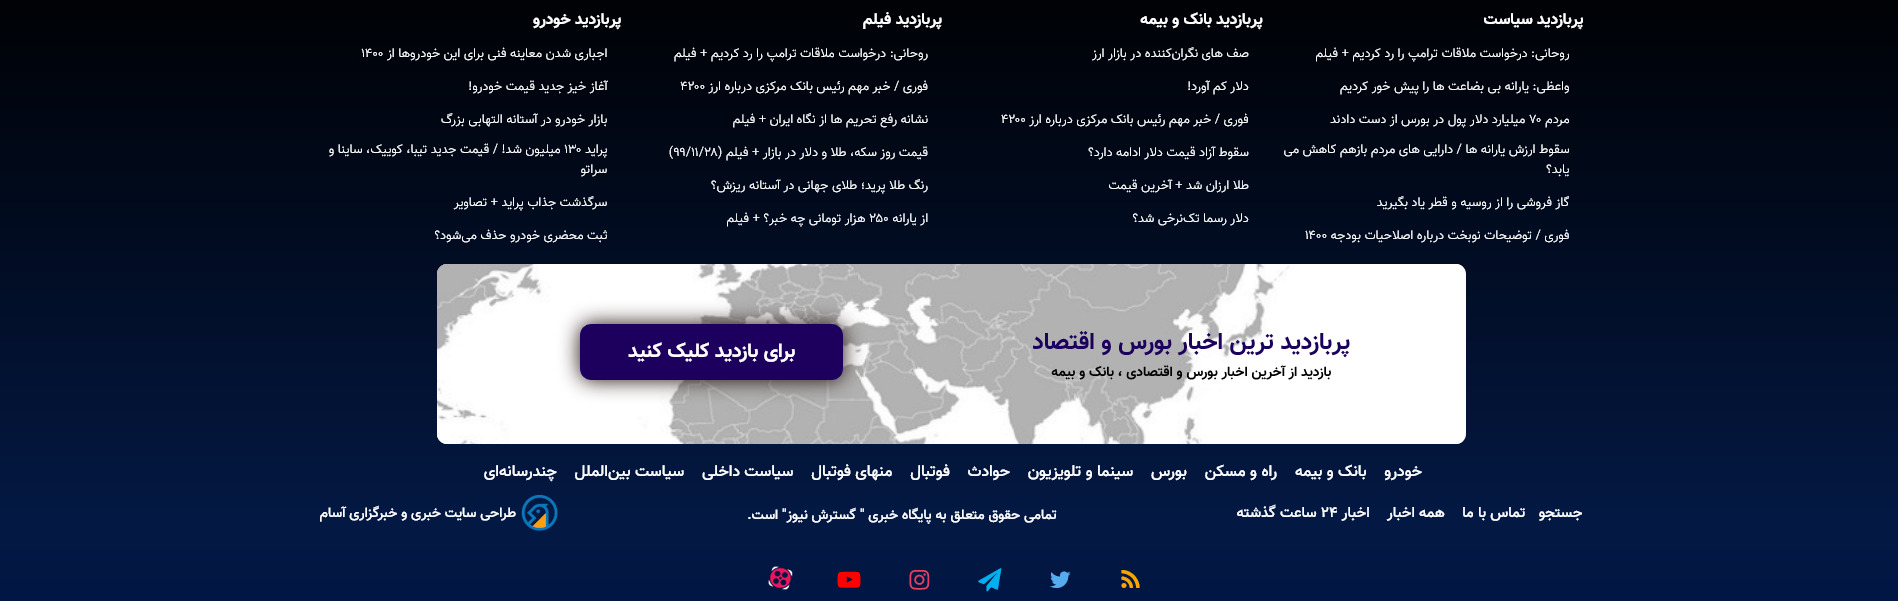 فوتر وبسایت محتوا و خبرگذاری پایگاه خبری گسترش نیوز اردیبهشت ۱۴۰۰